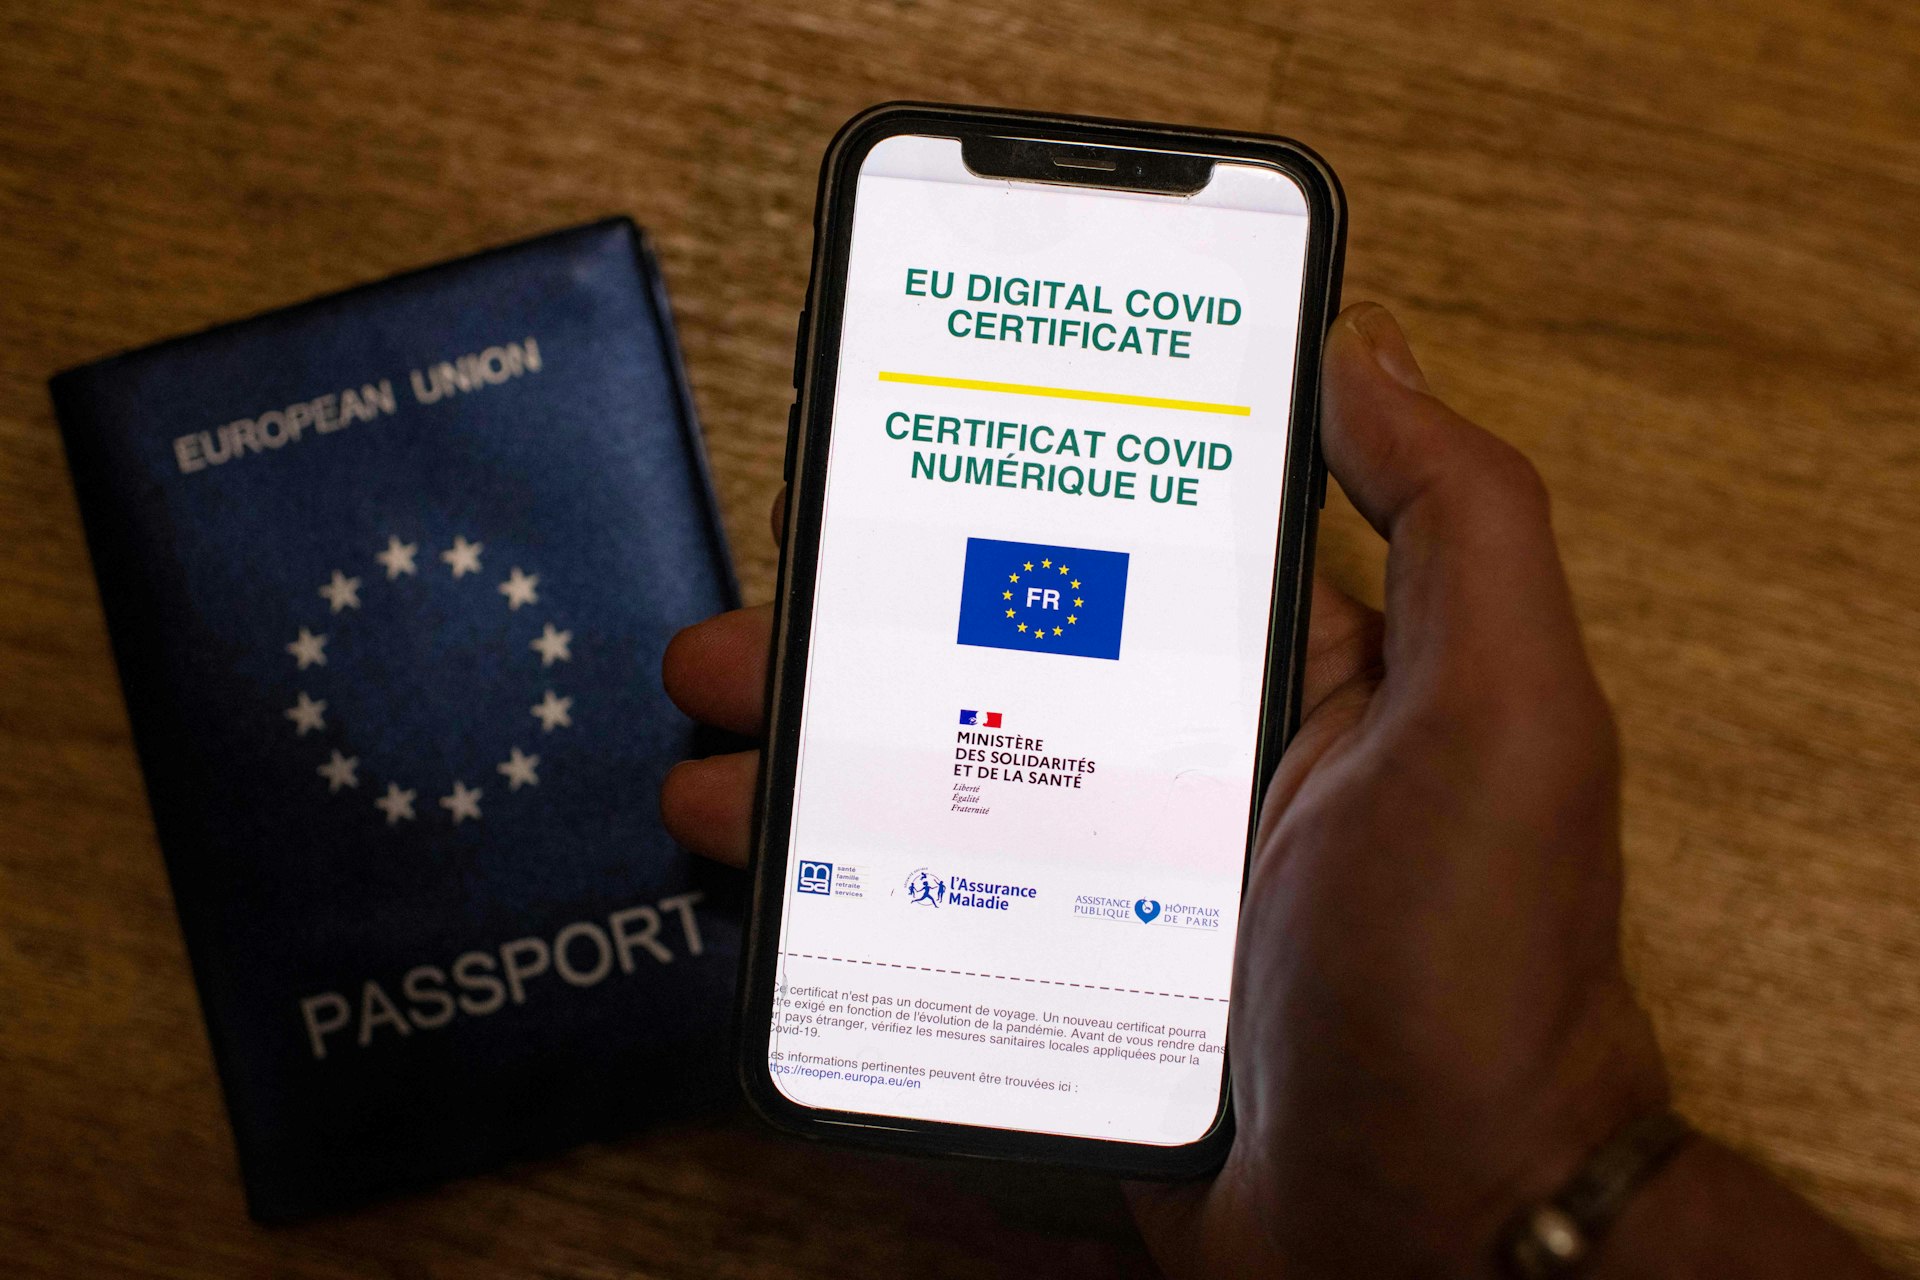 Digital version of the EU's digital COVID certificate